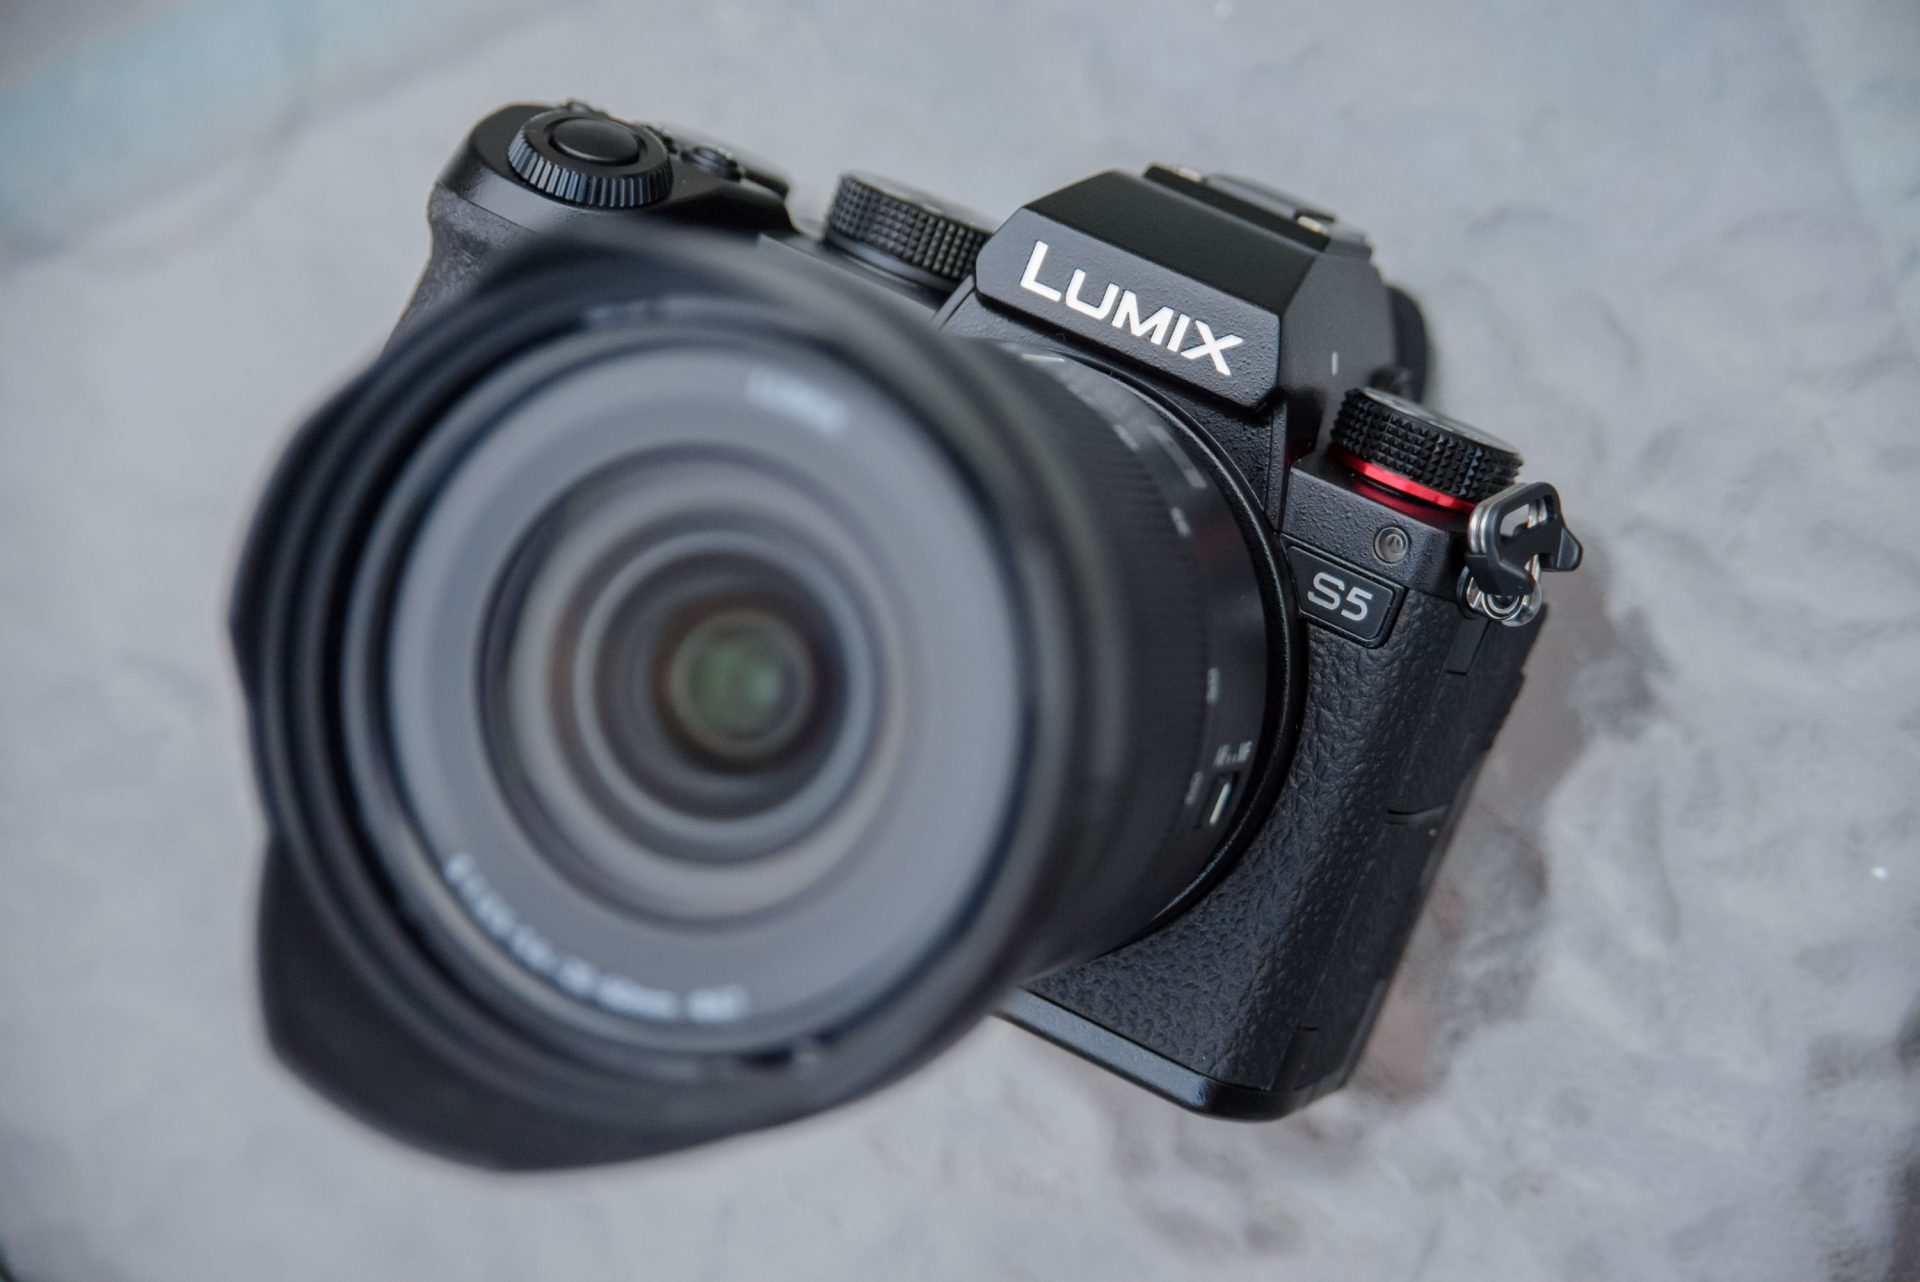 Máy ảnh Panasonic Lumix S5 ra mắt, cảm biến full frame 24MP, chống rung 5 trục, quay 4K60p, giá 2000 USD